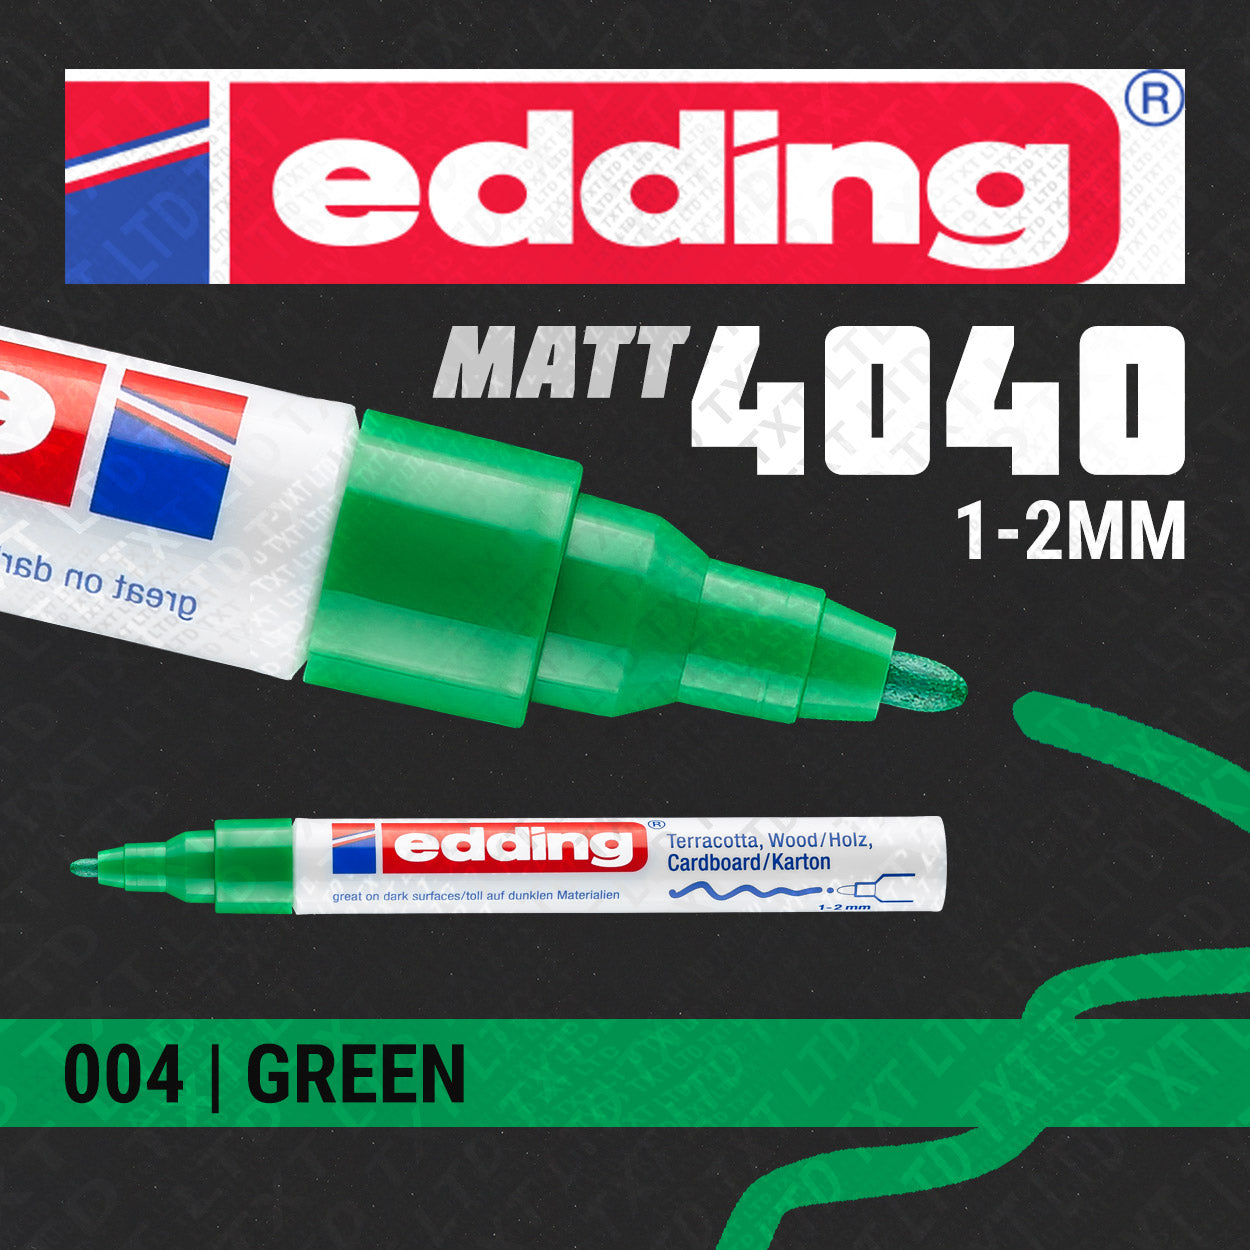 edding 4040 Matt Paint Marker